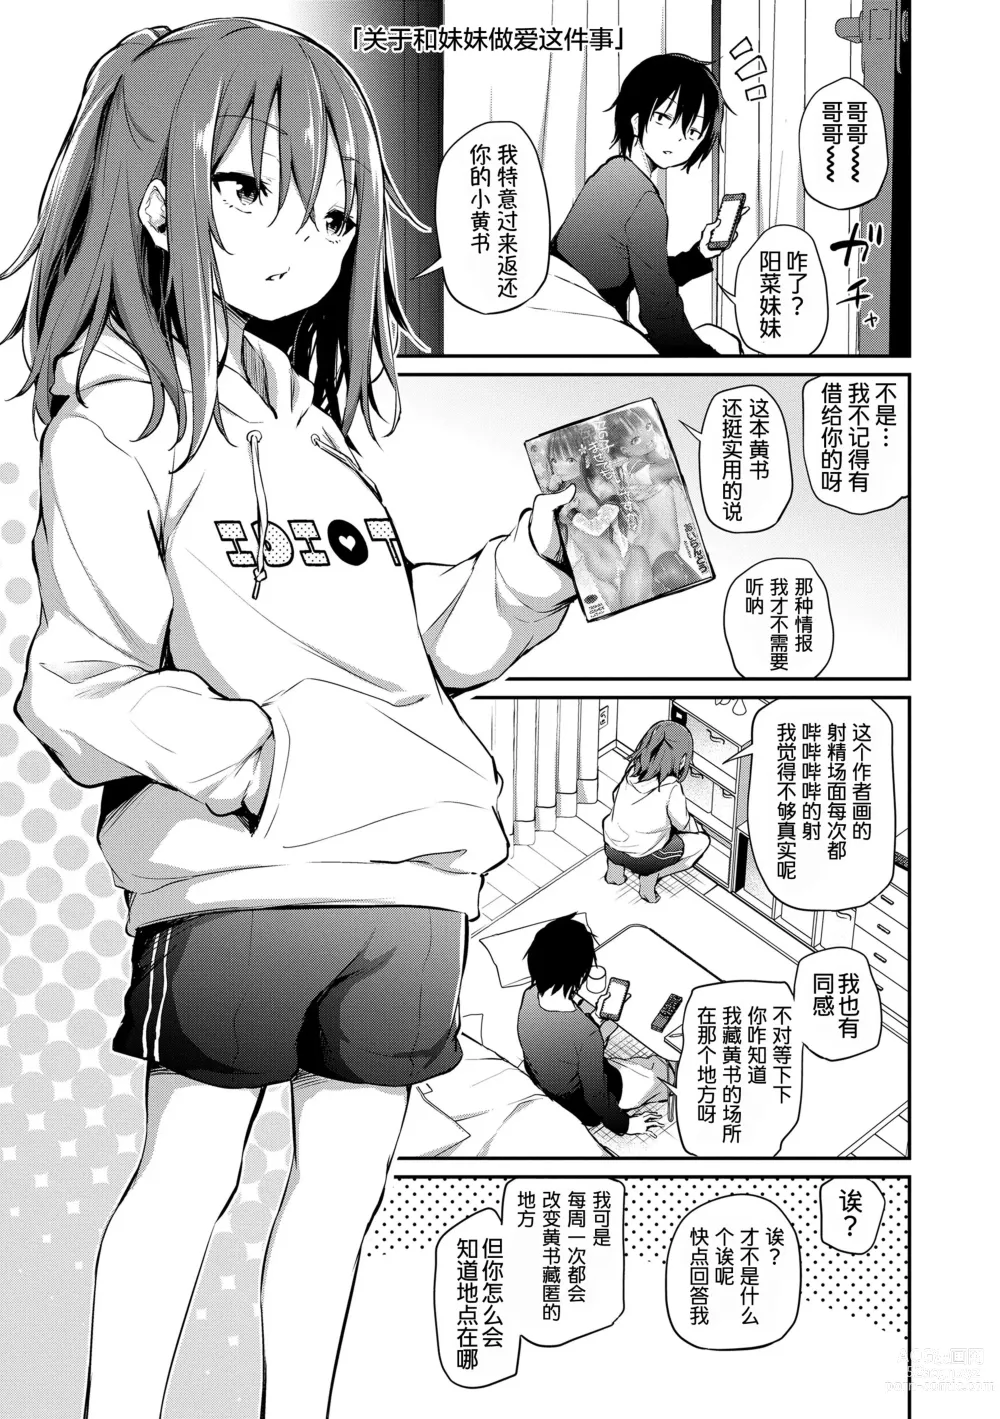 Page 5 of manga Imouto TRIP (decensored)